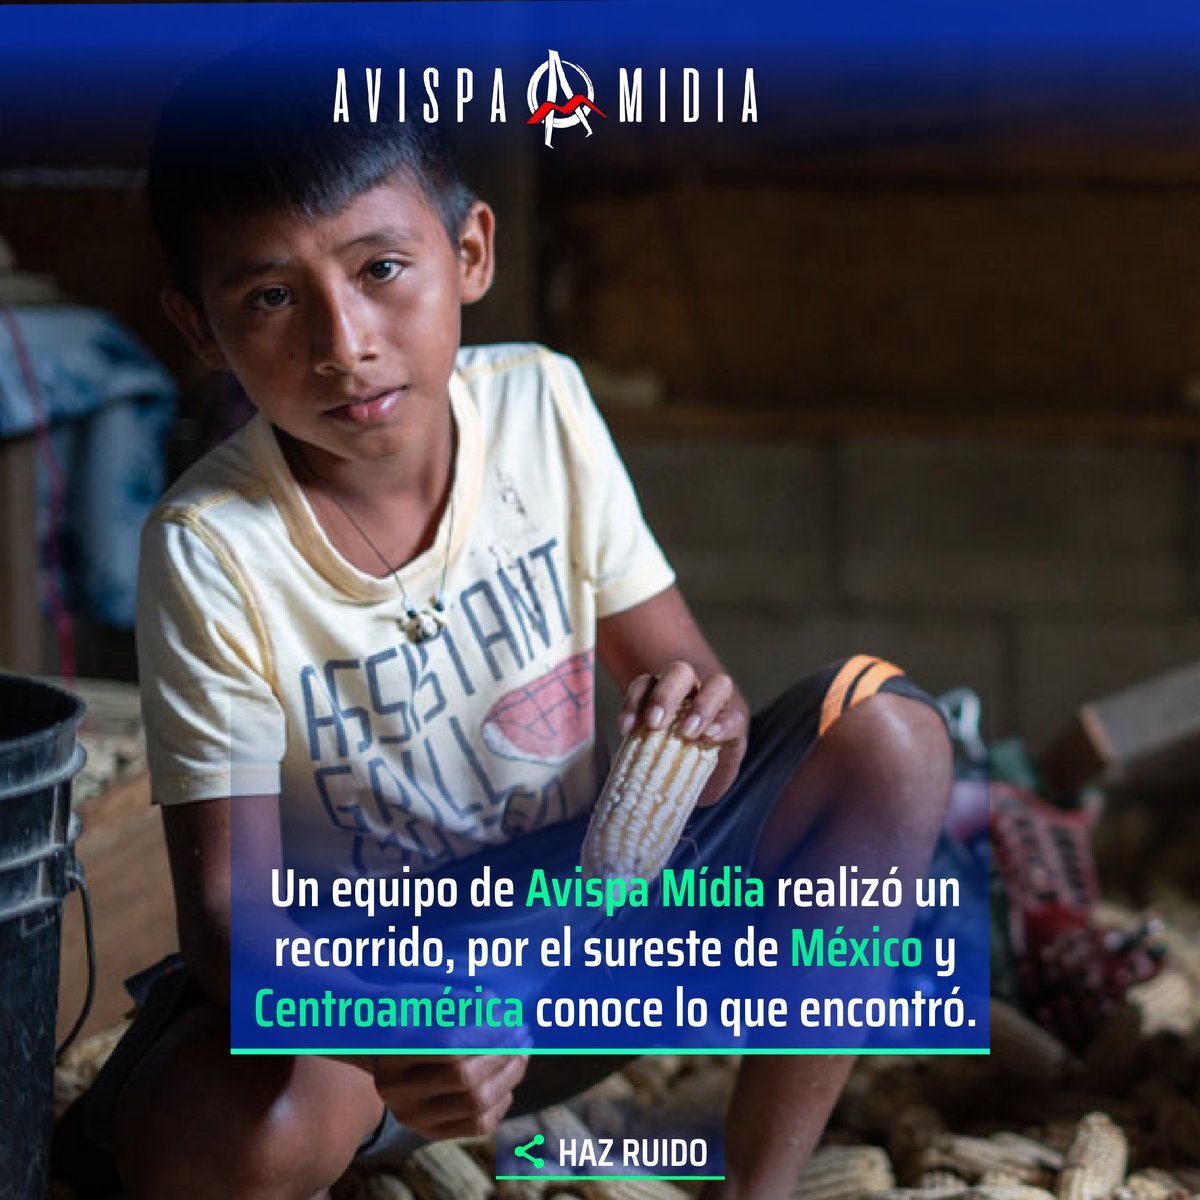 Ahora pueden consultar los reportajes de nuestras coberturas en el sur de México y Centroamérica:
avispa.org/hilando-el-cap…

#Megaproyectos #ImpactoAmbiental #ComunidadesIndígenas #DesarrolloSustentable #EconomíaVerde #DespojoTerritorial